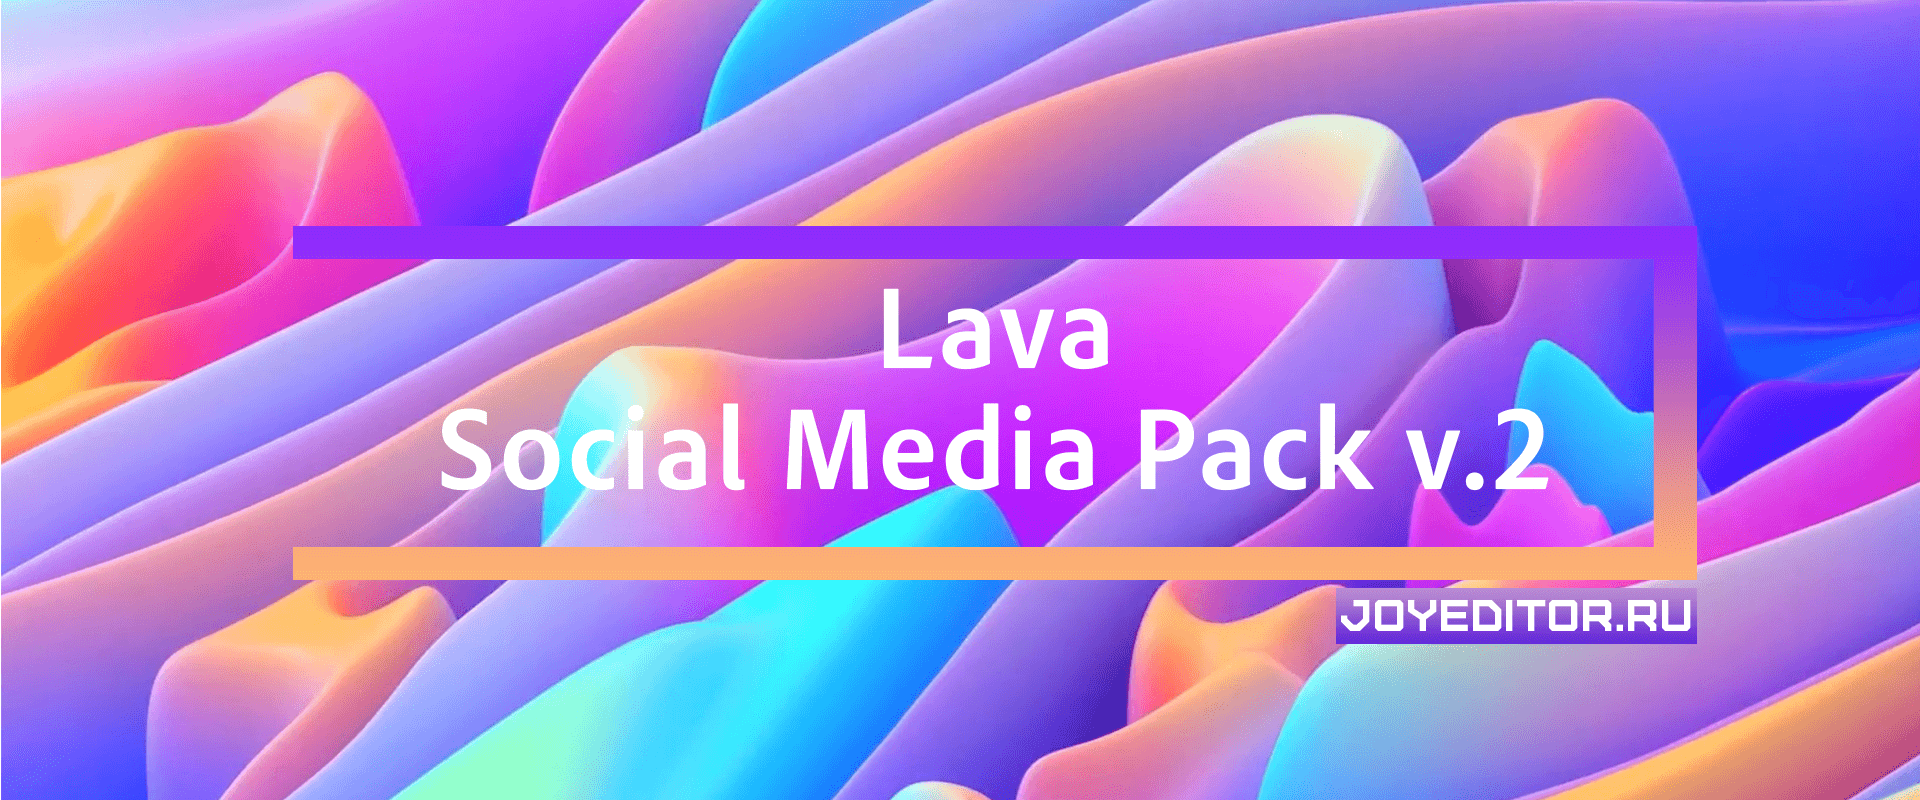 Lava Social Media Pack v.2